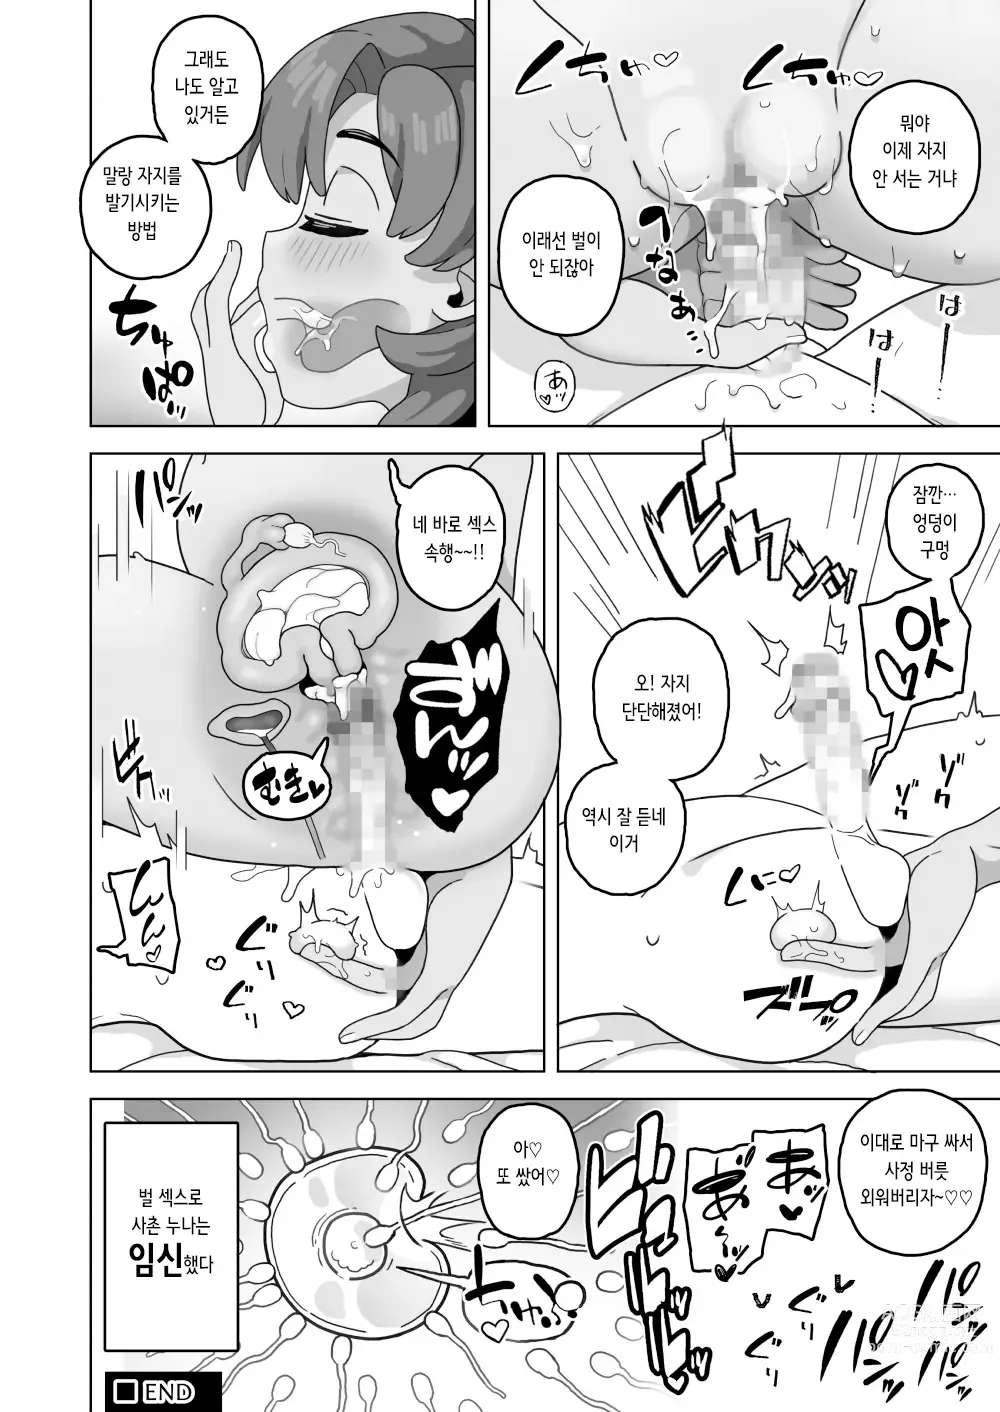 Page 24 of doujinshi 엄마 나이 대의 마마와 노콘 섹스해서 임신시켜버리는 책